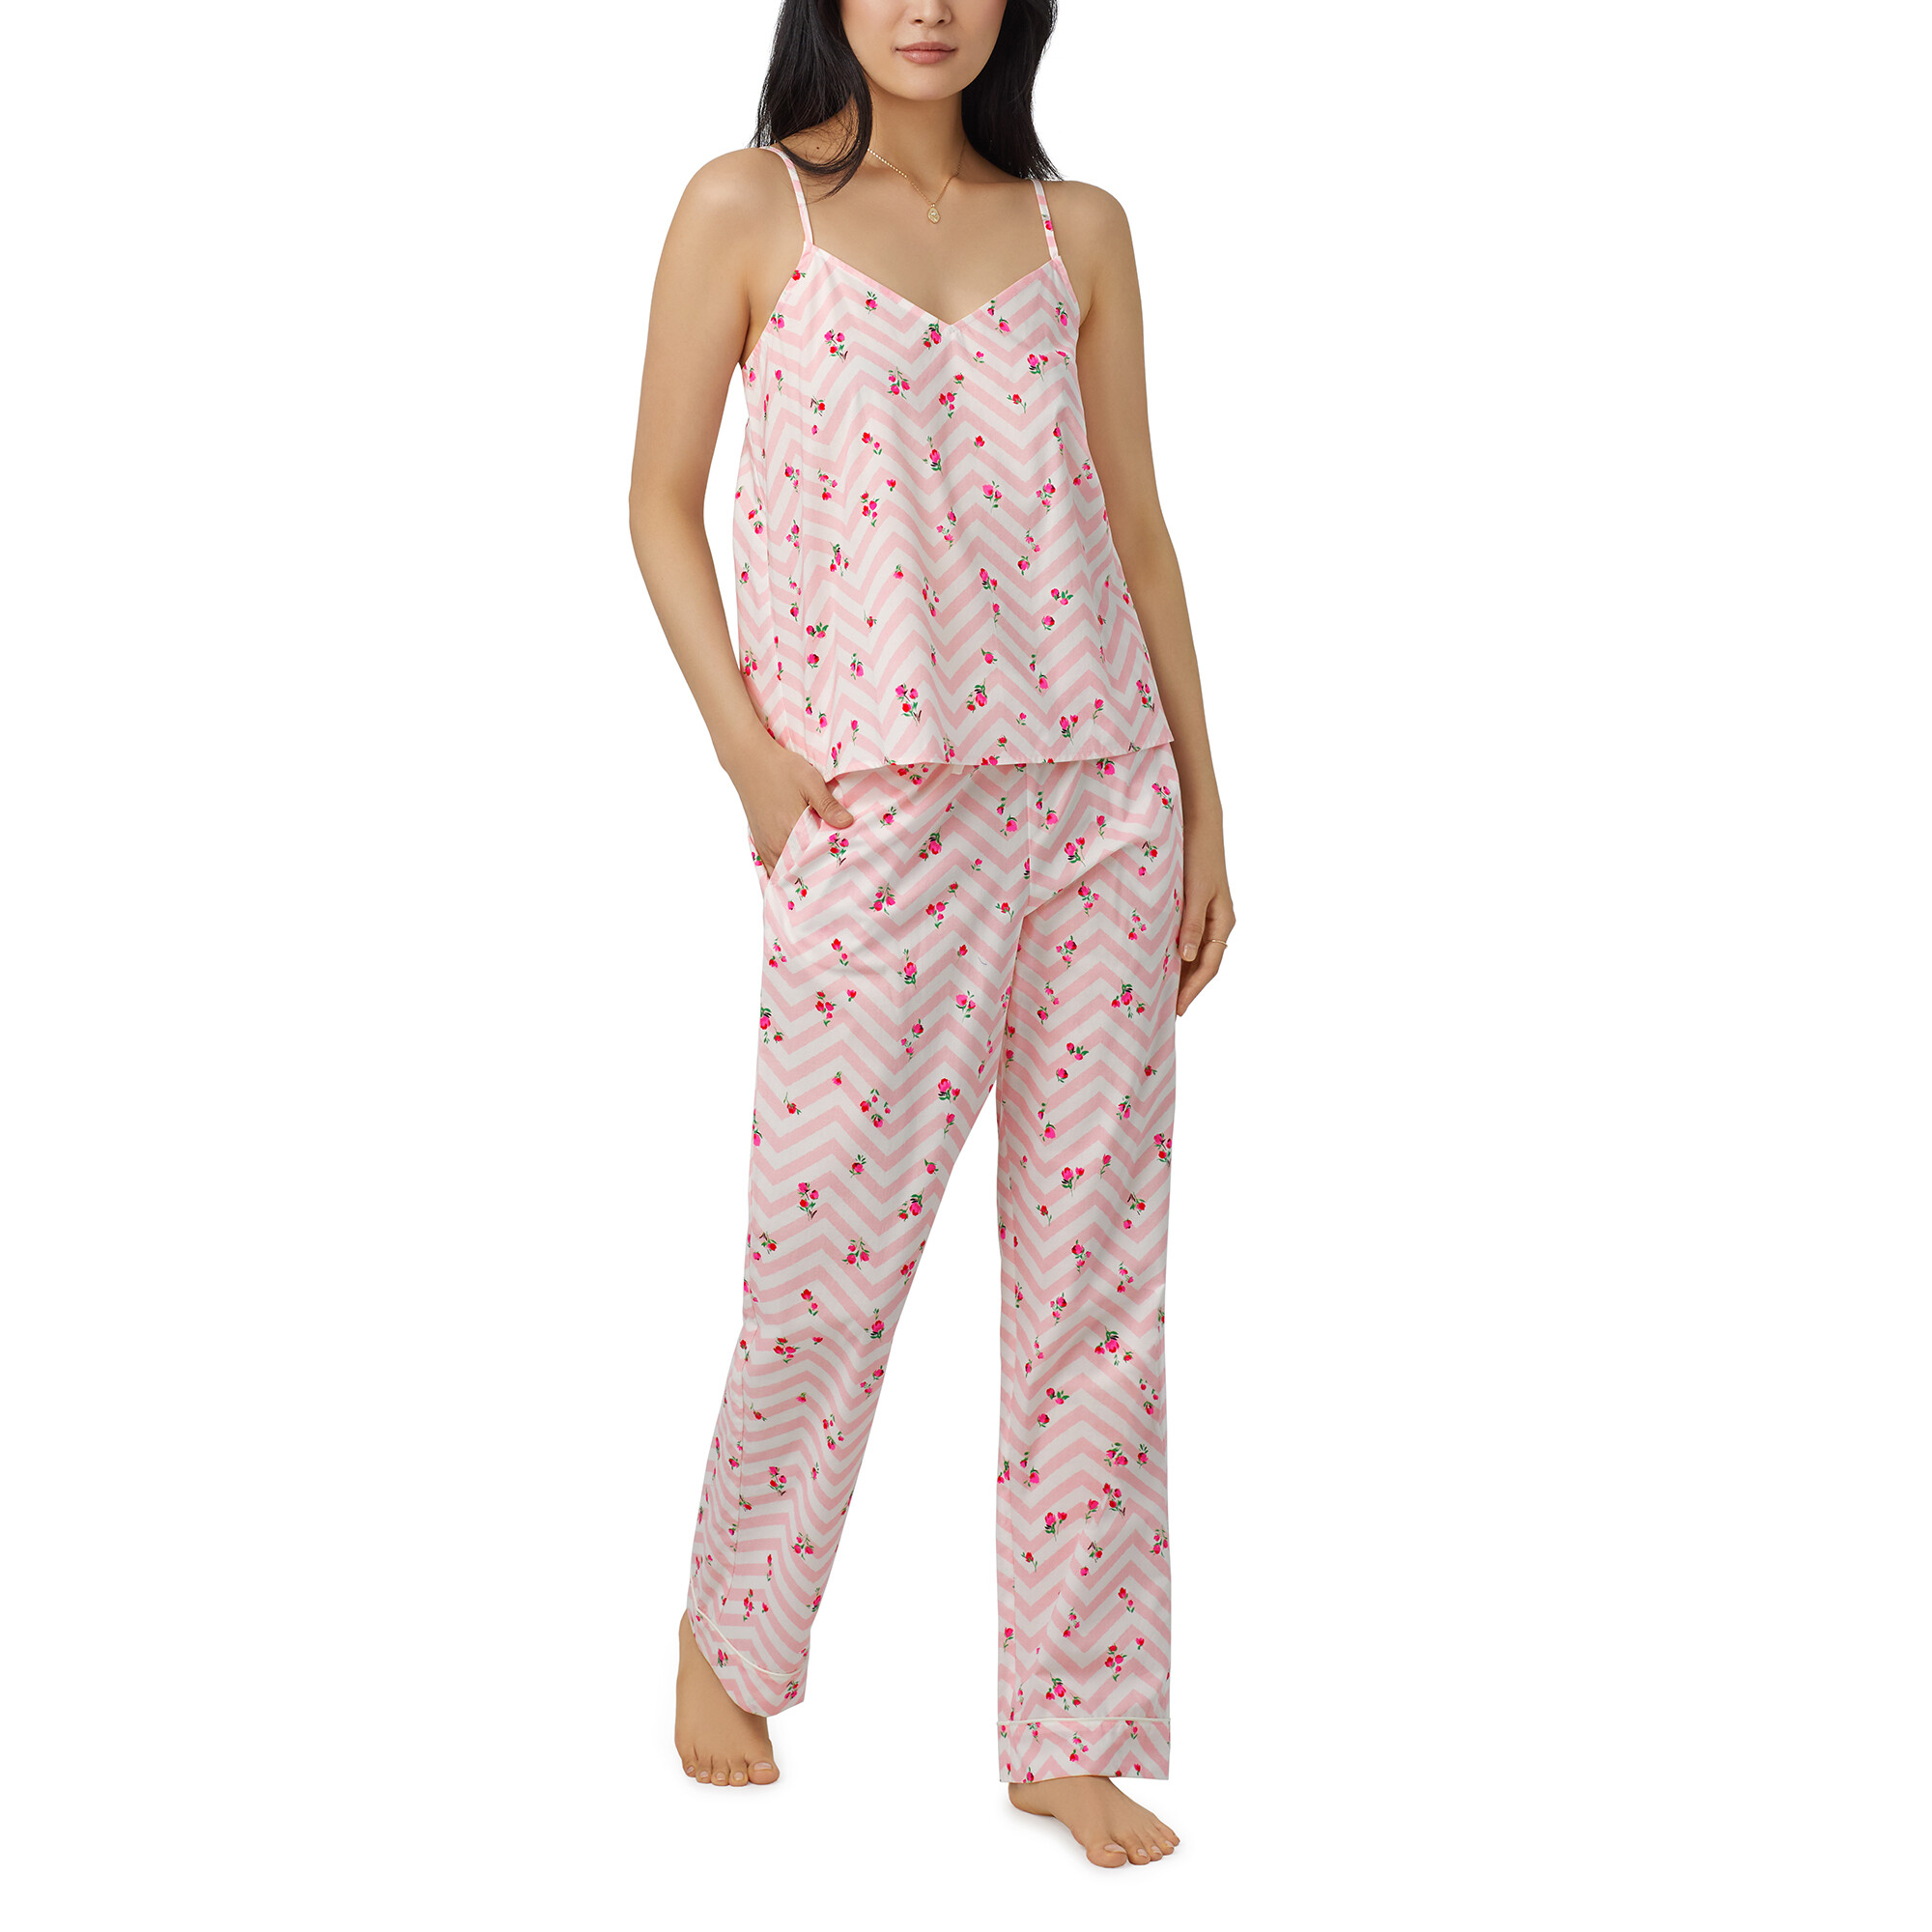 Imbracaminte Femei BedHead Pajamas Tank Pants PJ Set Josephine